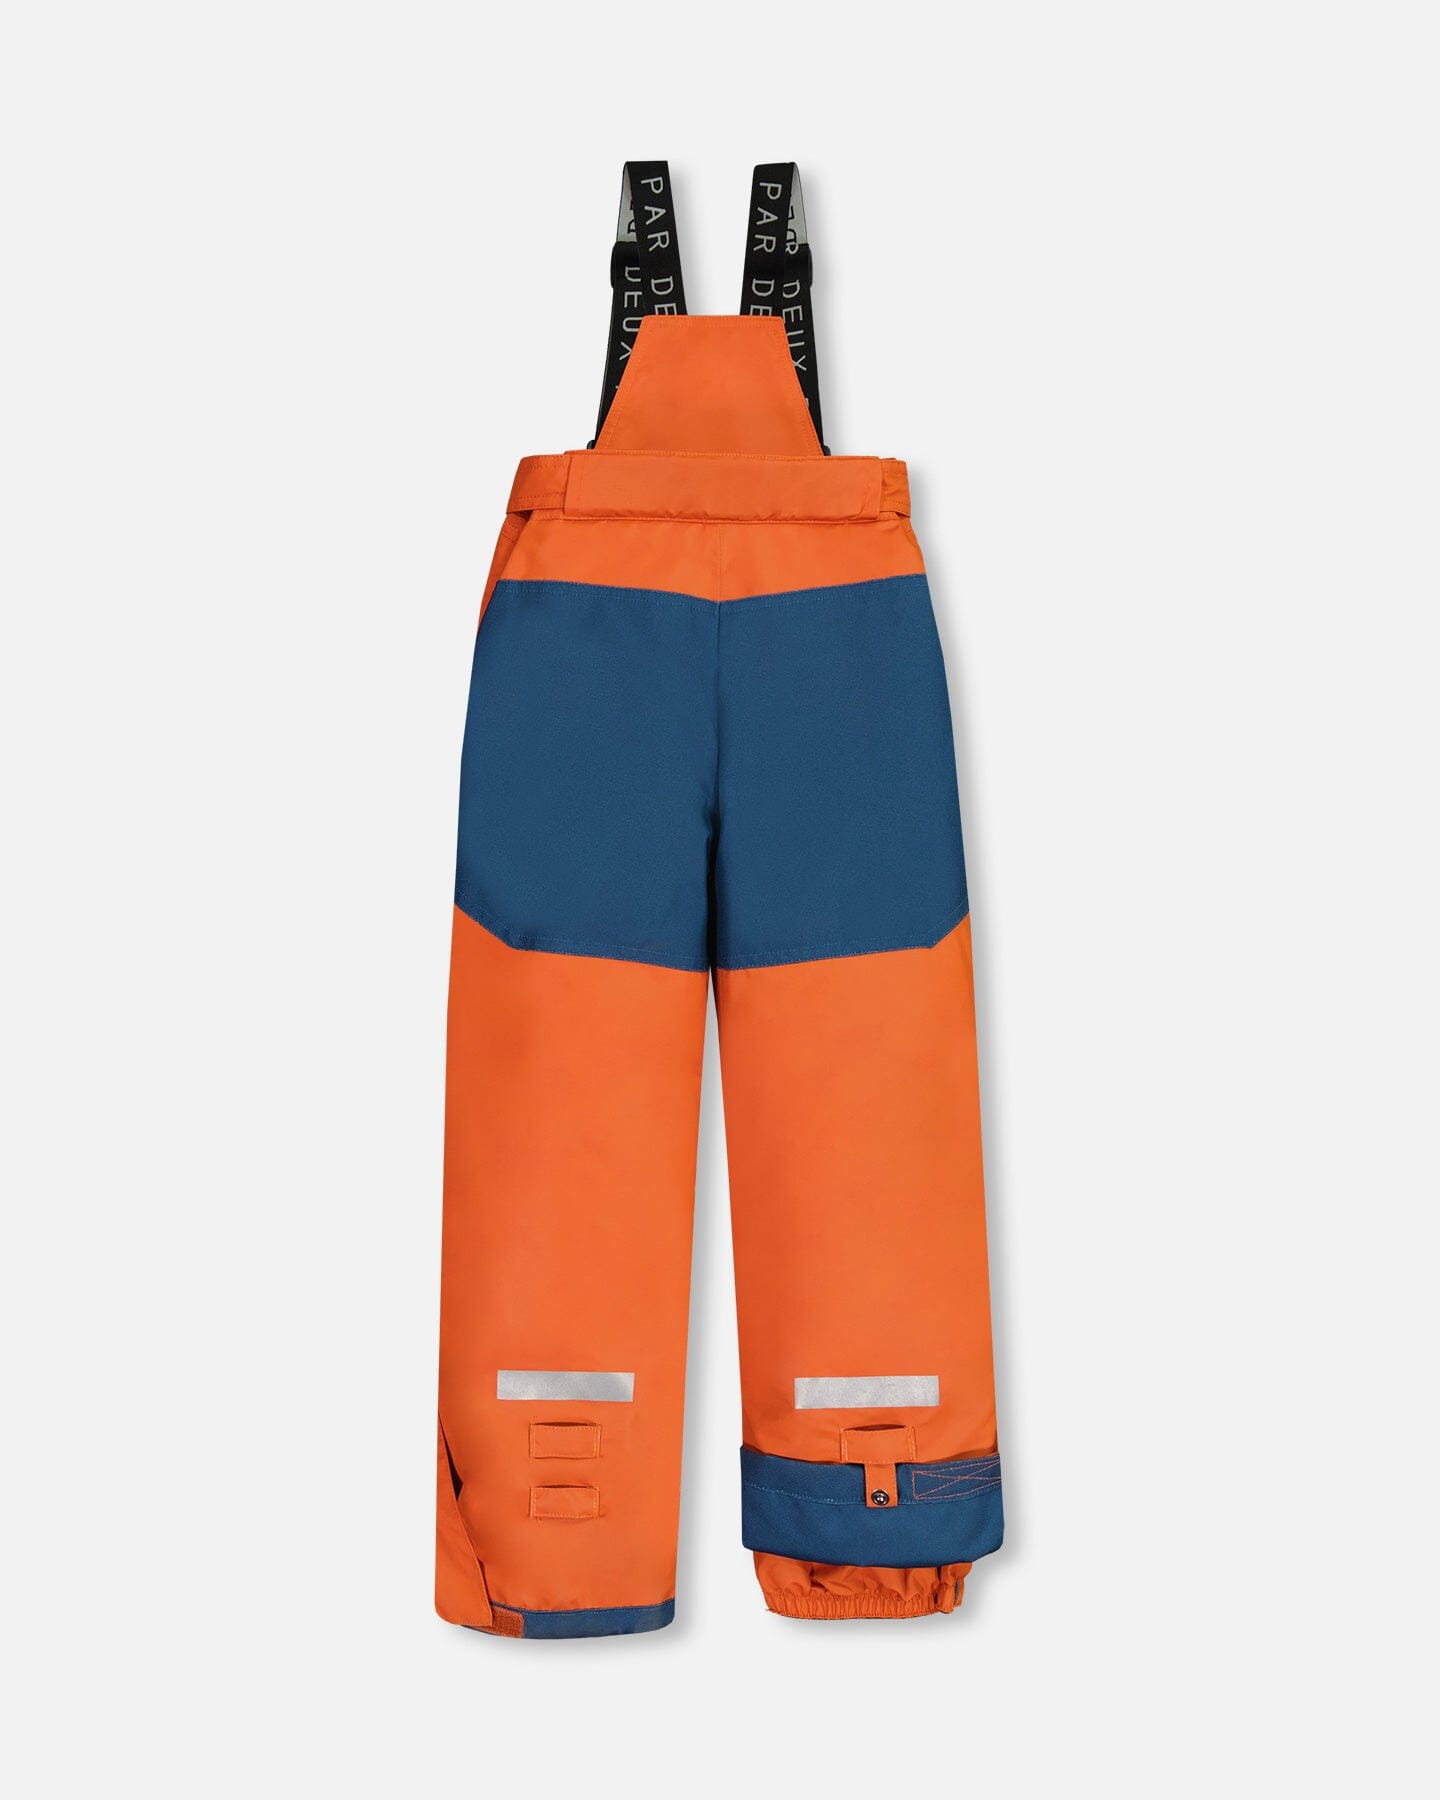 Teknik Two Piece Snowsuit Teal Blue And Fire Orange Snowsuits Deux par Deux 